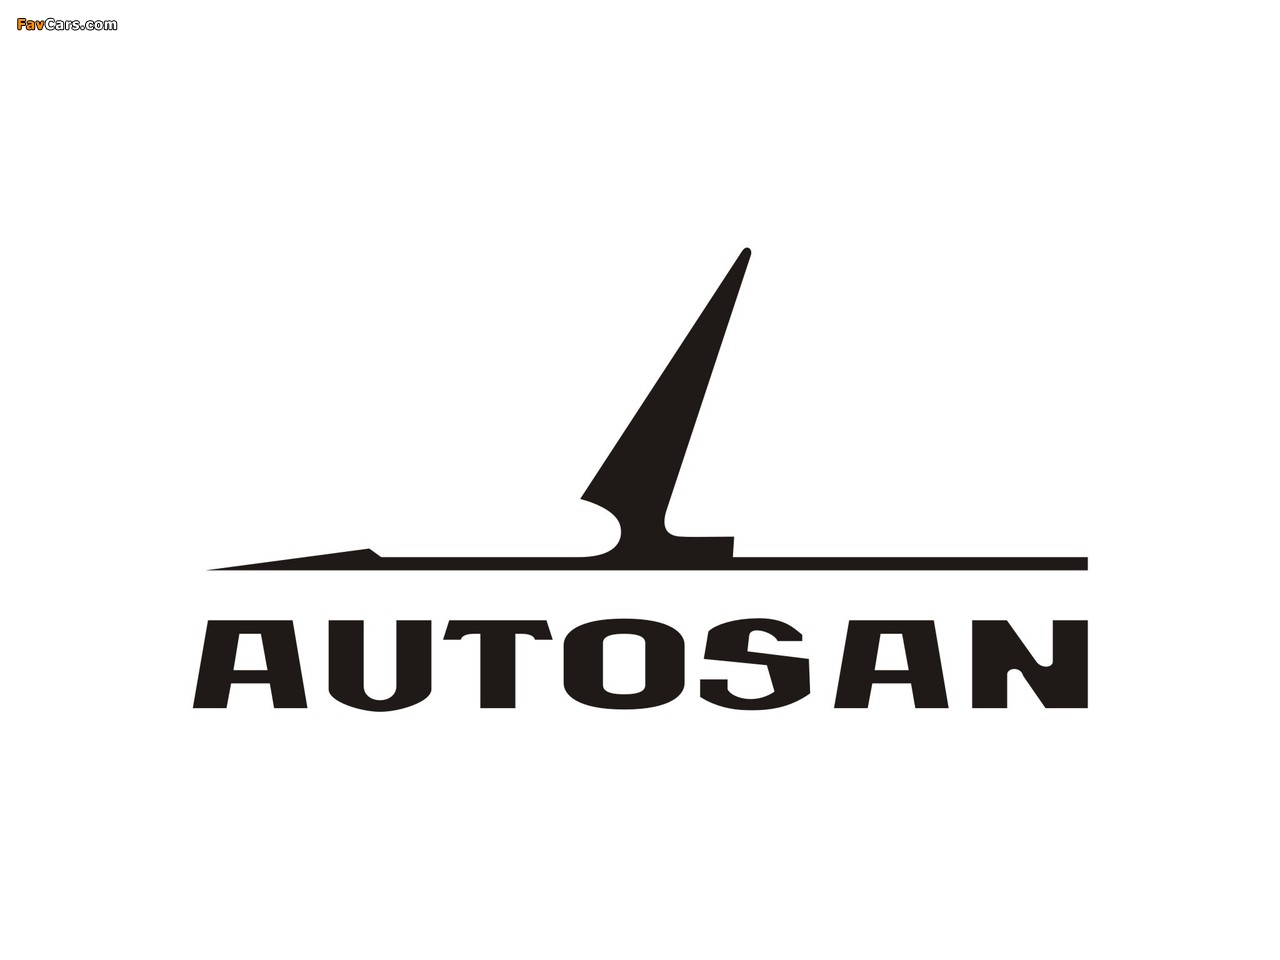 Autosan photos (1280 x 960)